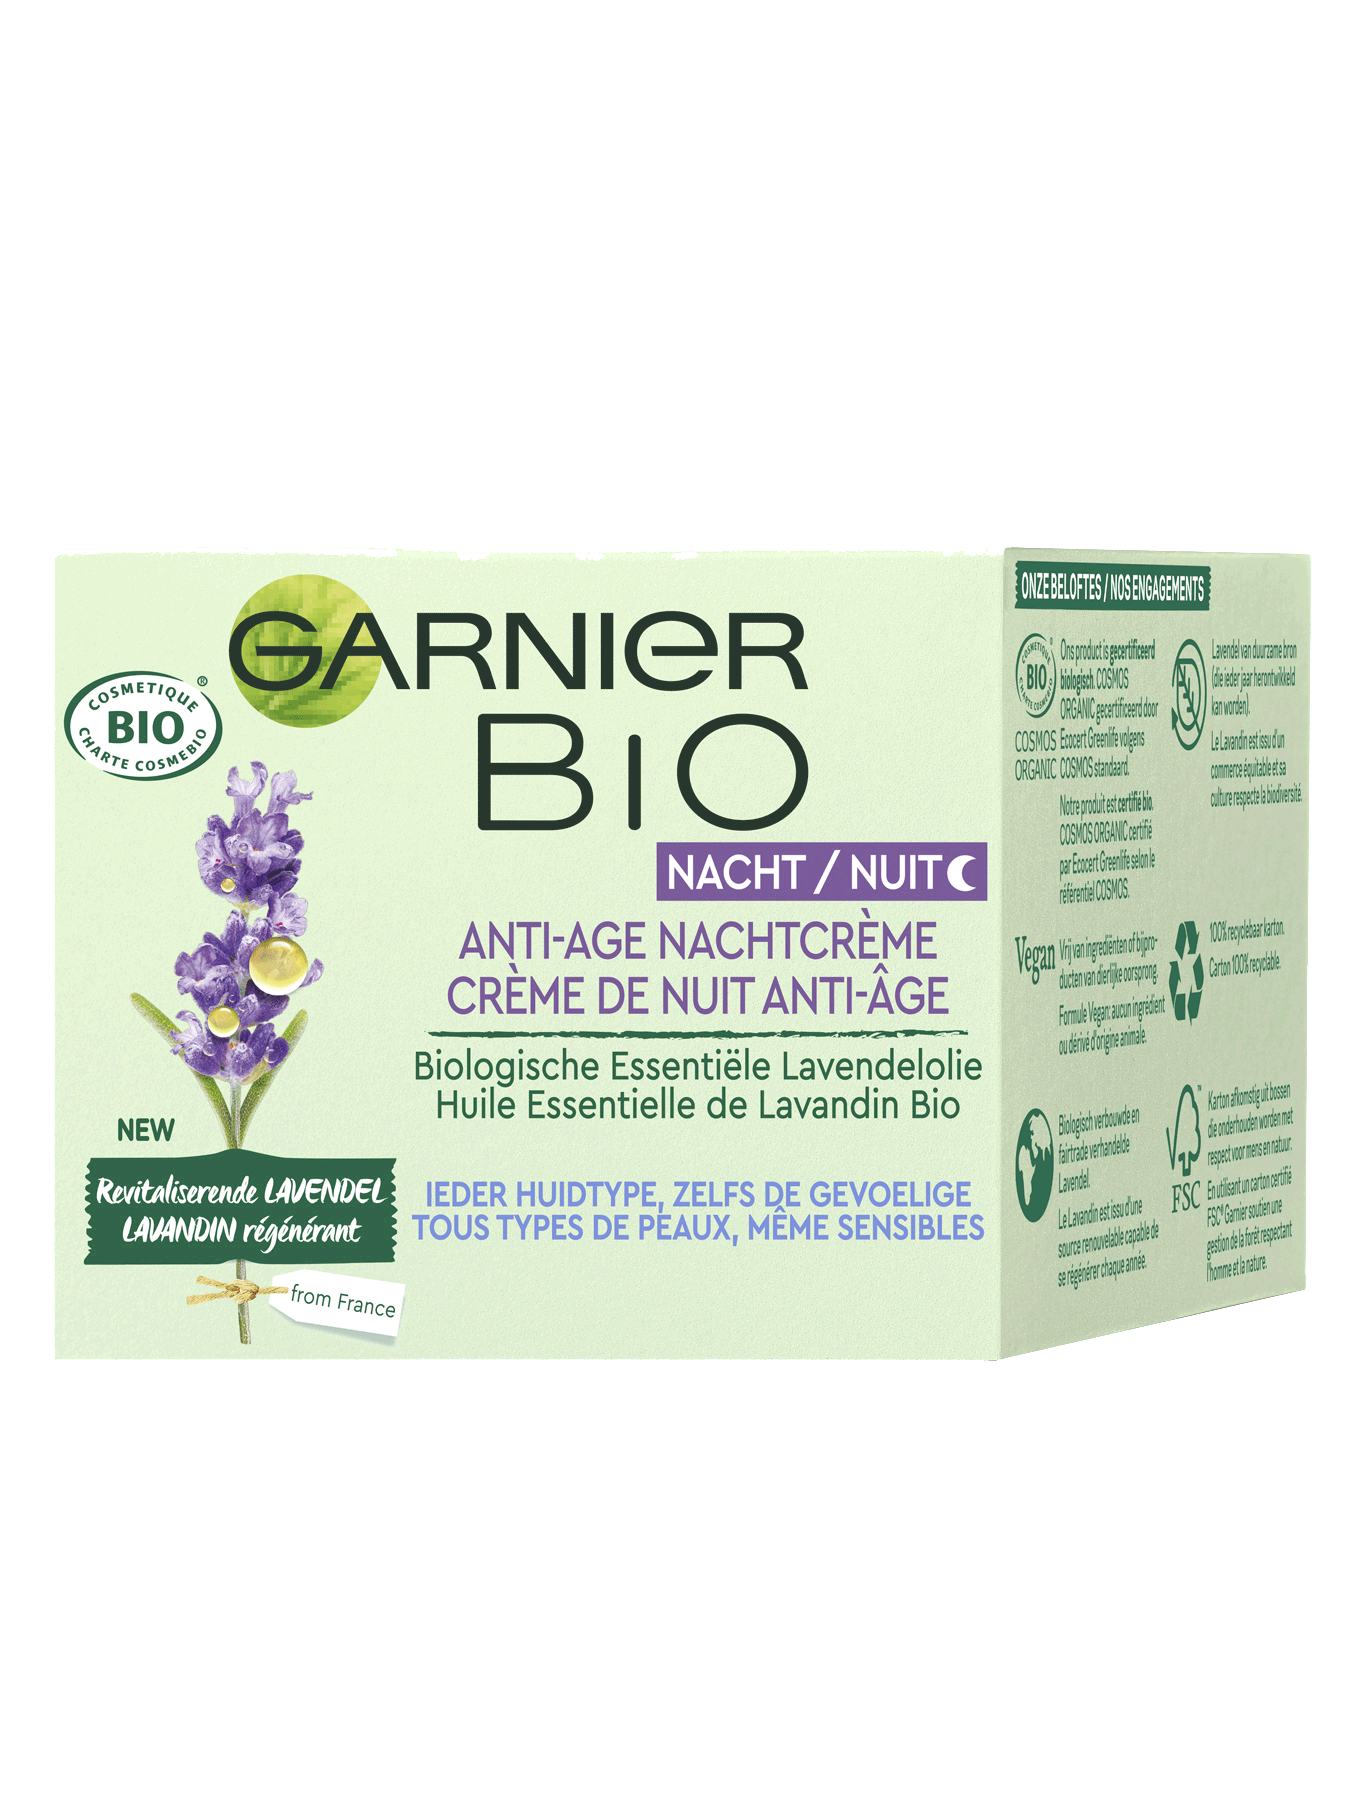 Verpakking Garnier Bio Lavendel Nachtcrème 3D